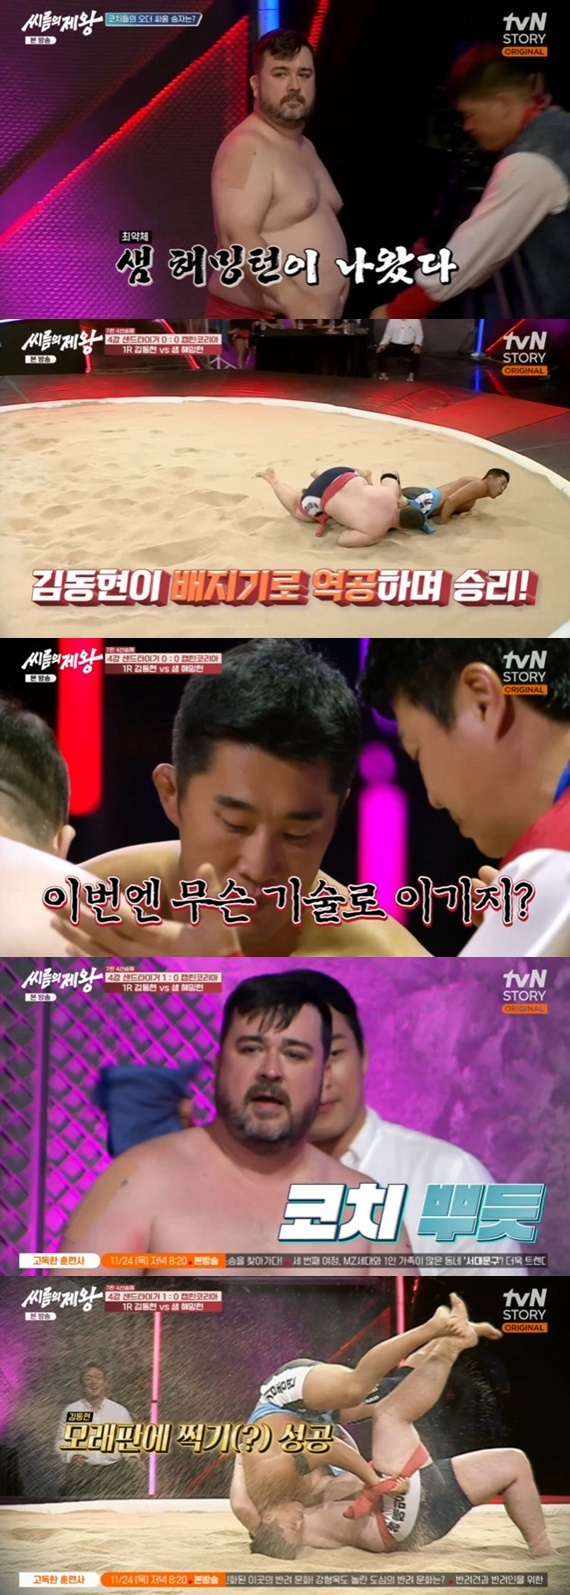 tvN STORY '씨름의 제왕' 캡처